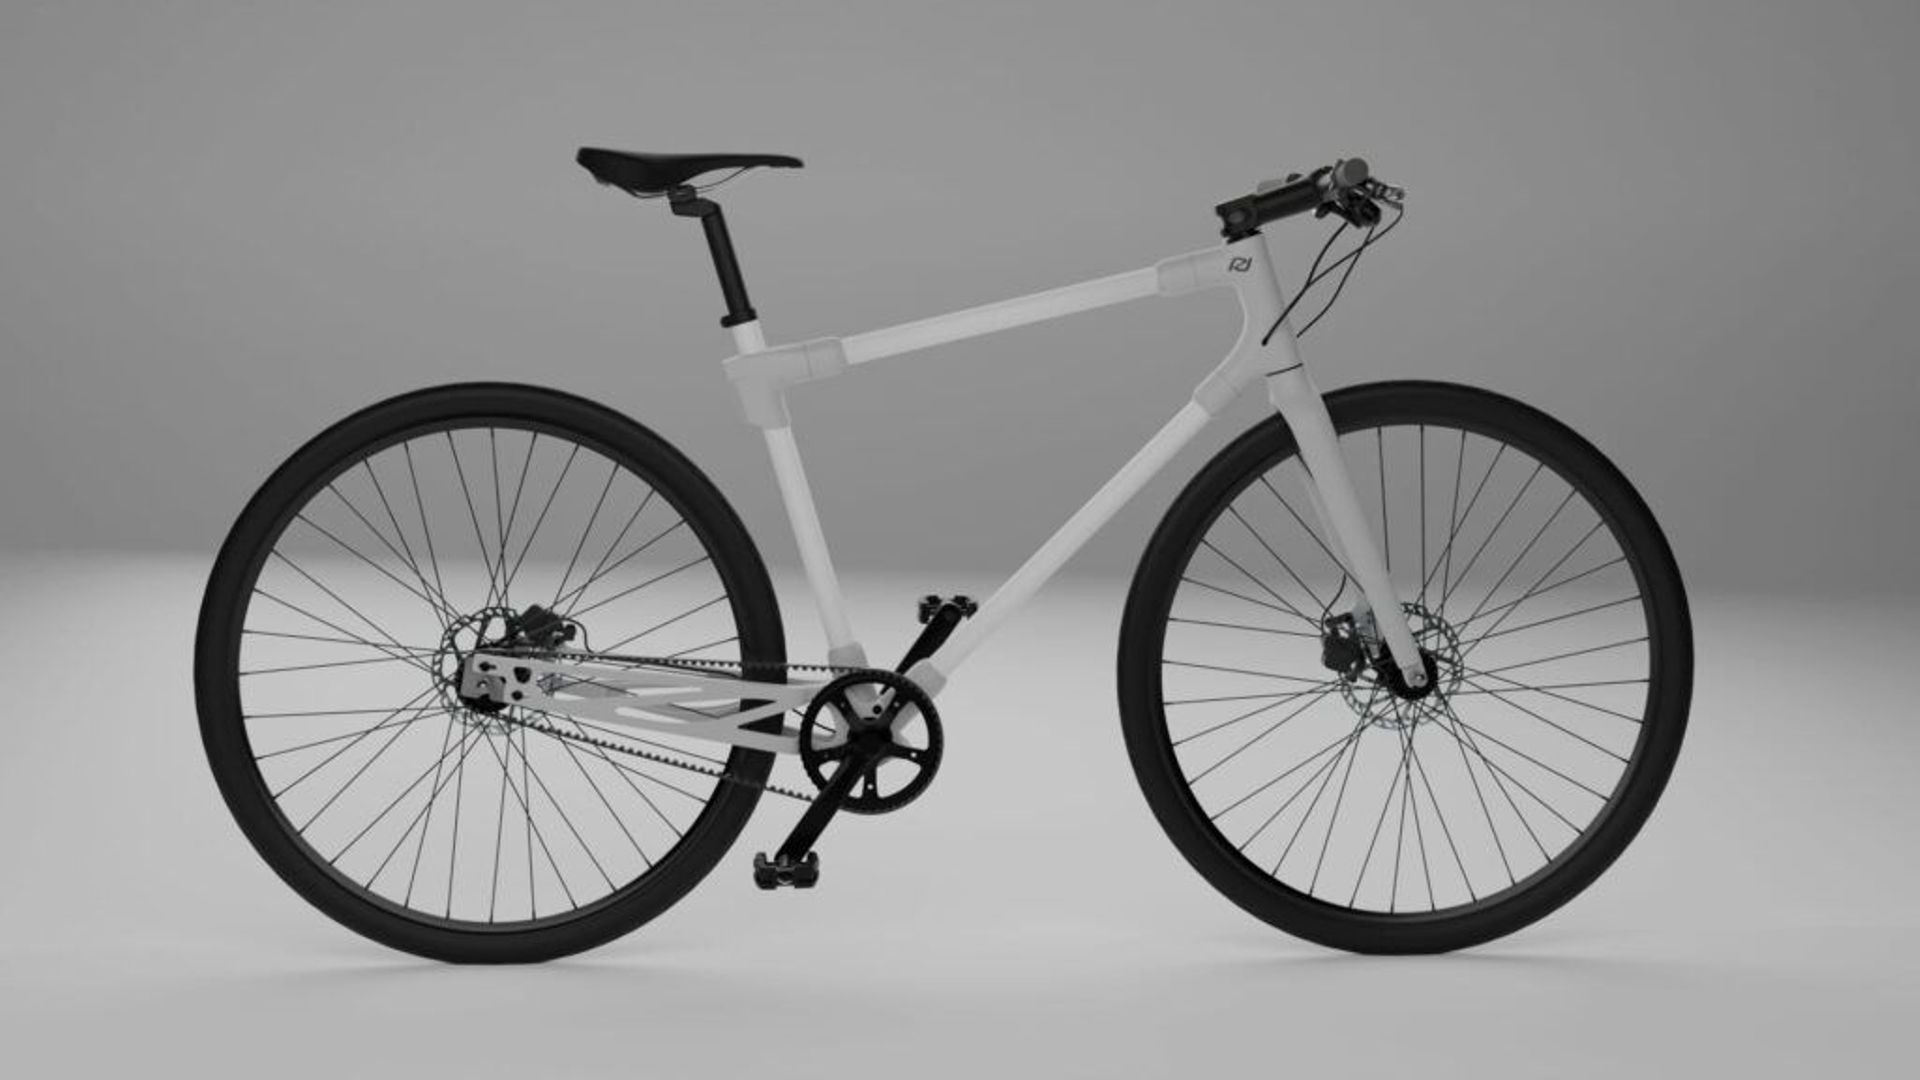 Le Ref One dipose d'un cadre breveté, étudié pour pouvoir transformer facilement et rapidement le vélo.